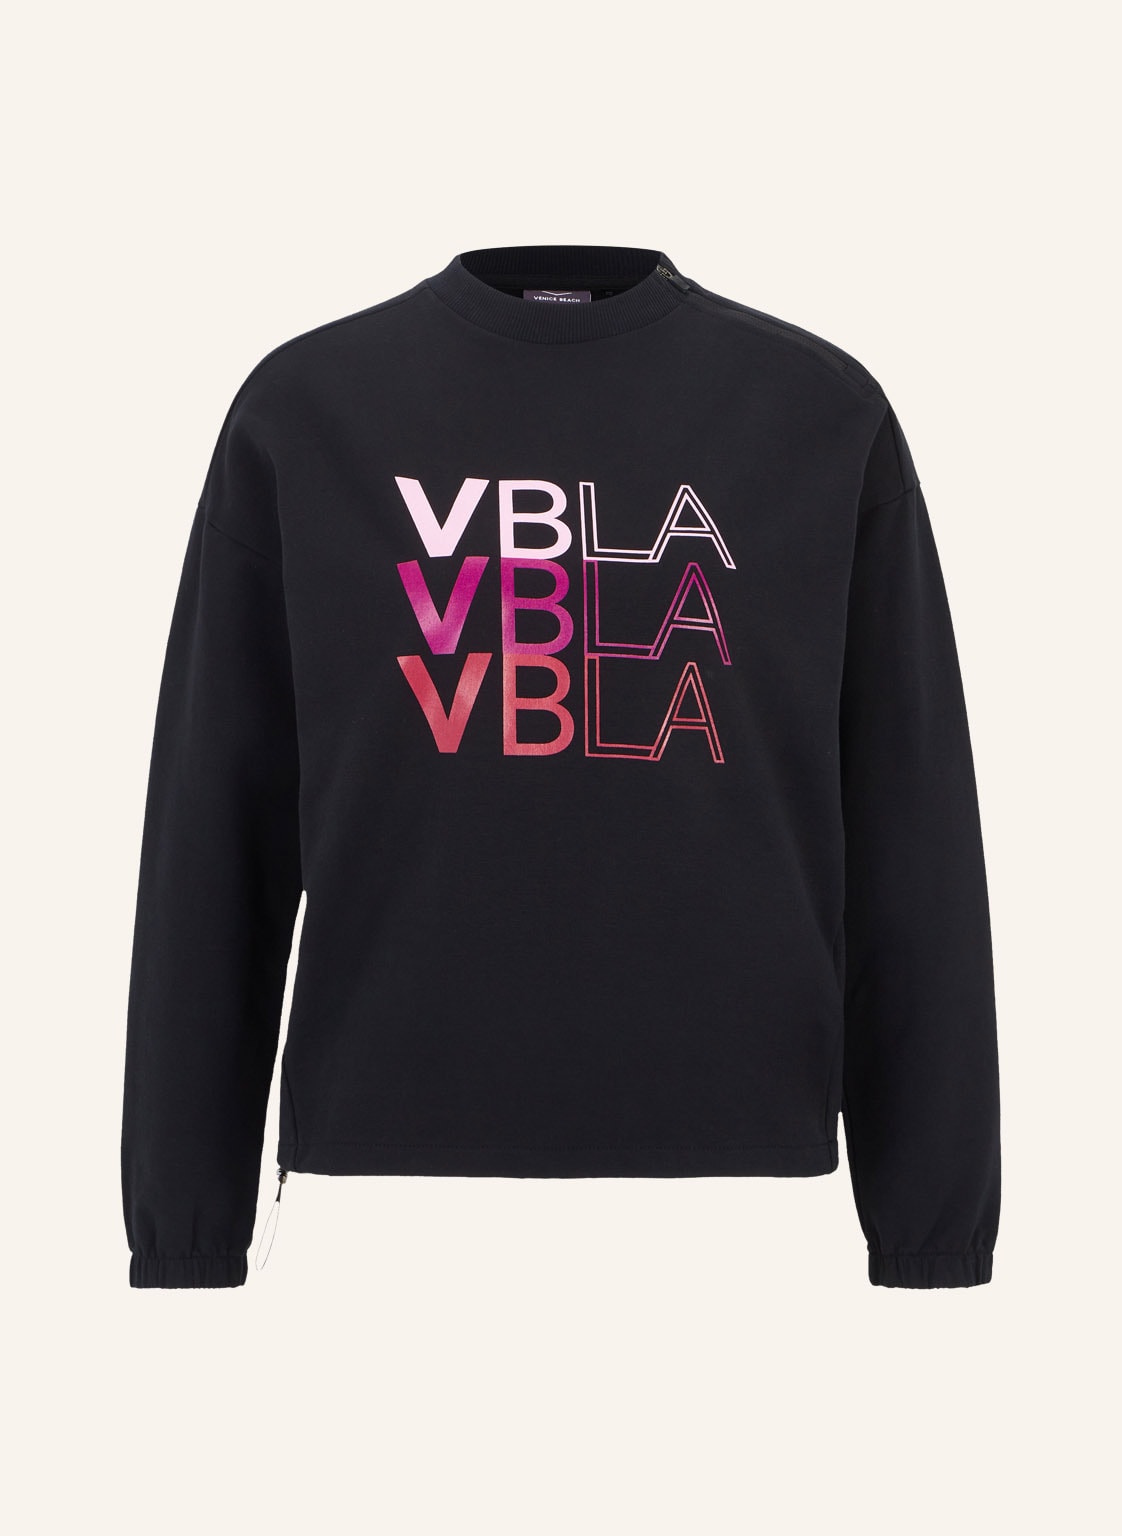 Venice Beach Sweatshirt Vb Addison schwarz von VENICE BEACH